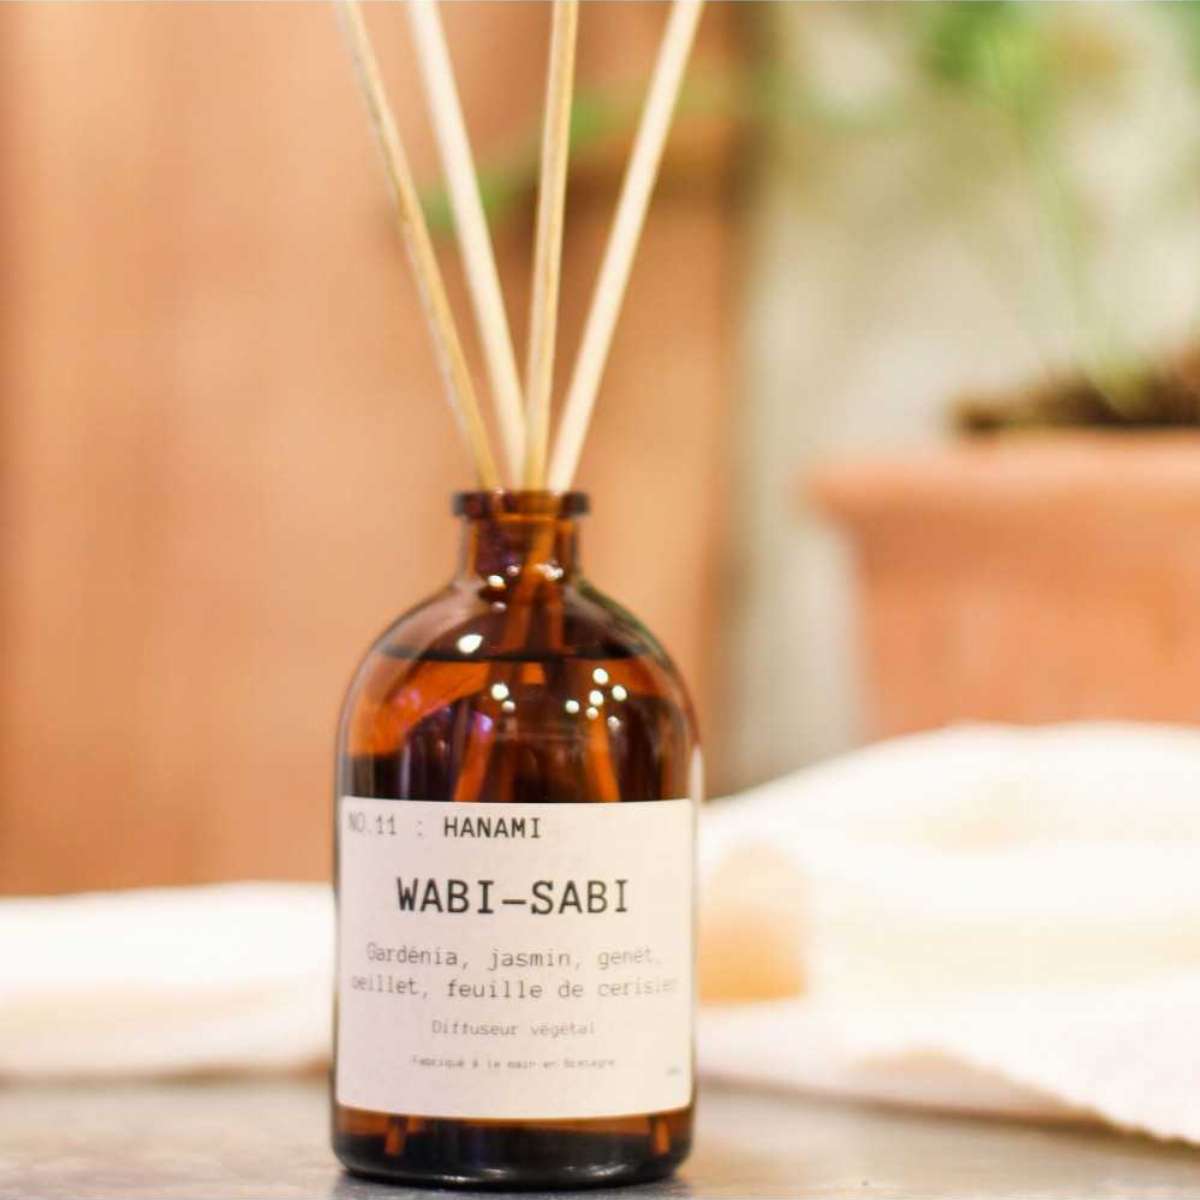 Diffuseur végétal "Wabi Sabi" (7 parfums)